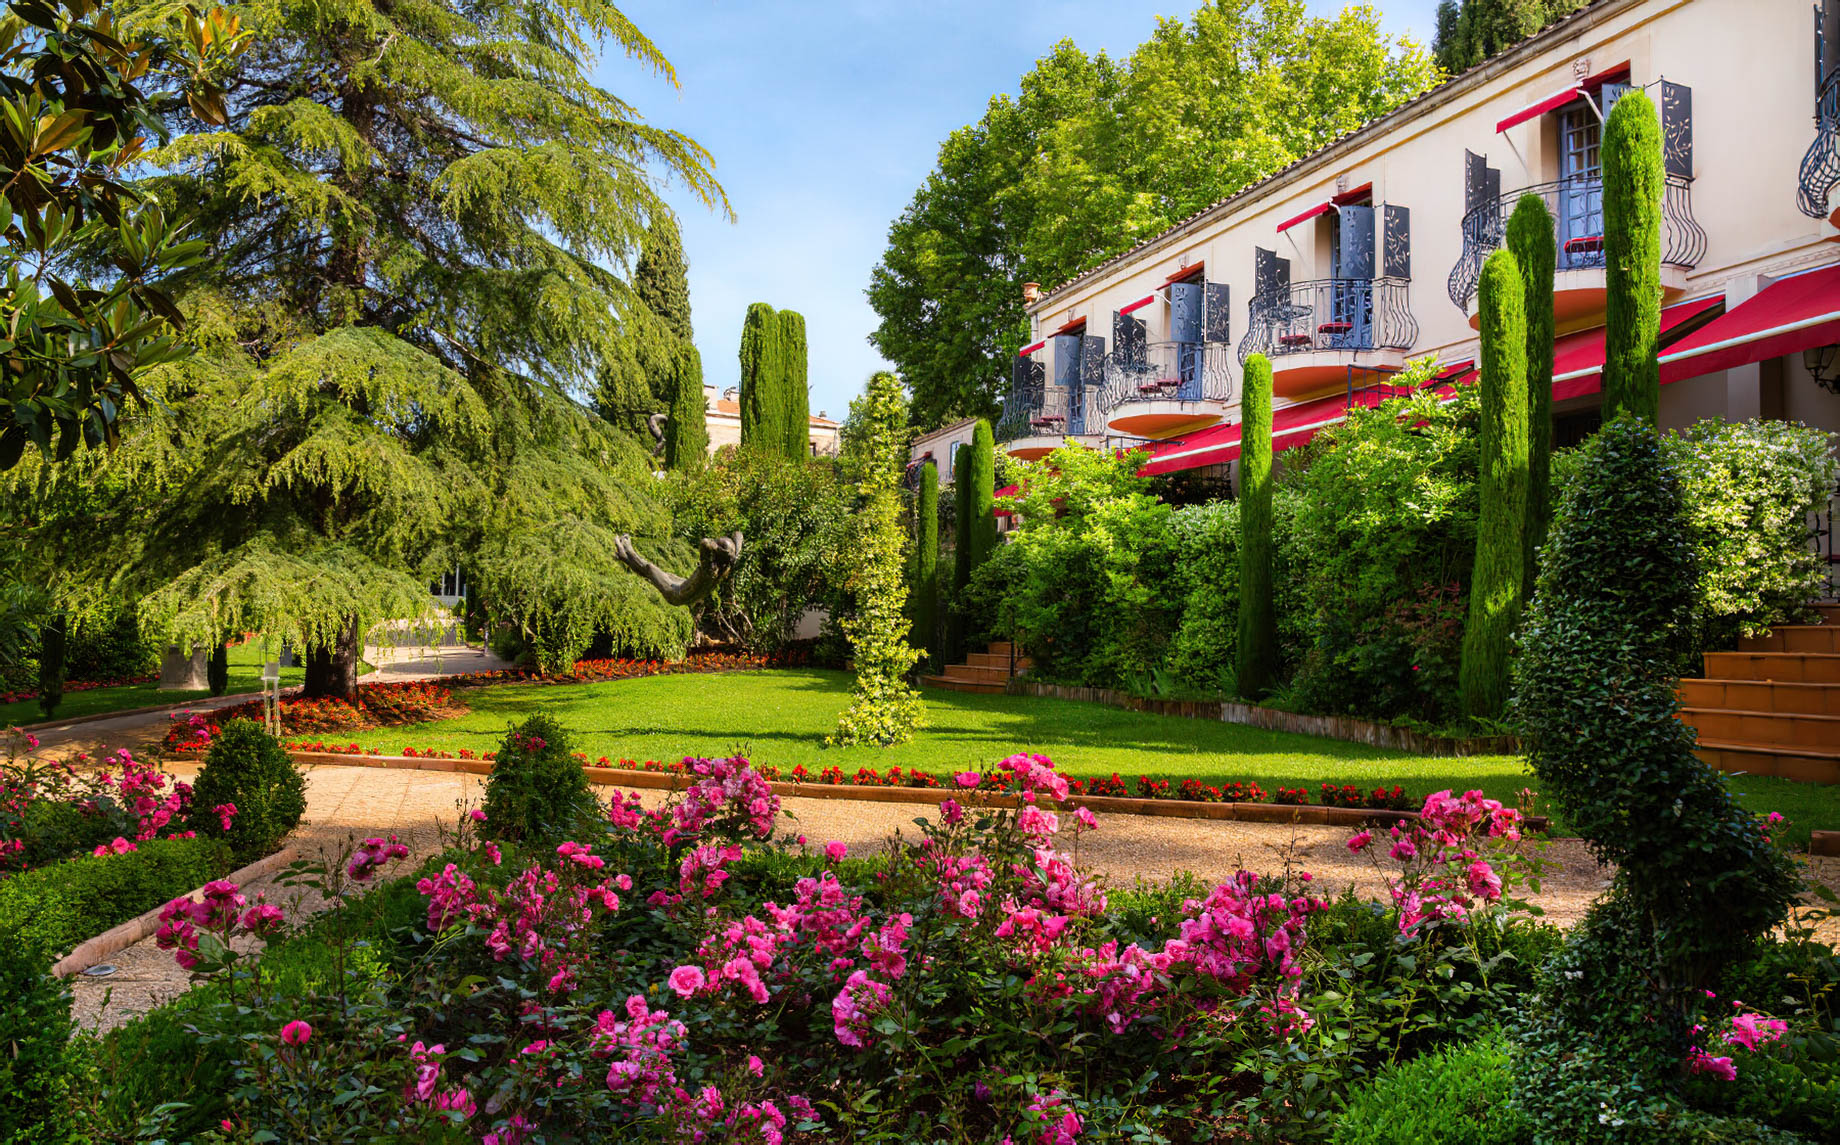 Villa Gallici Relais Châteaux Hotel – Aix-en-Provence, France – Manicured Lawn